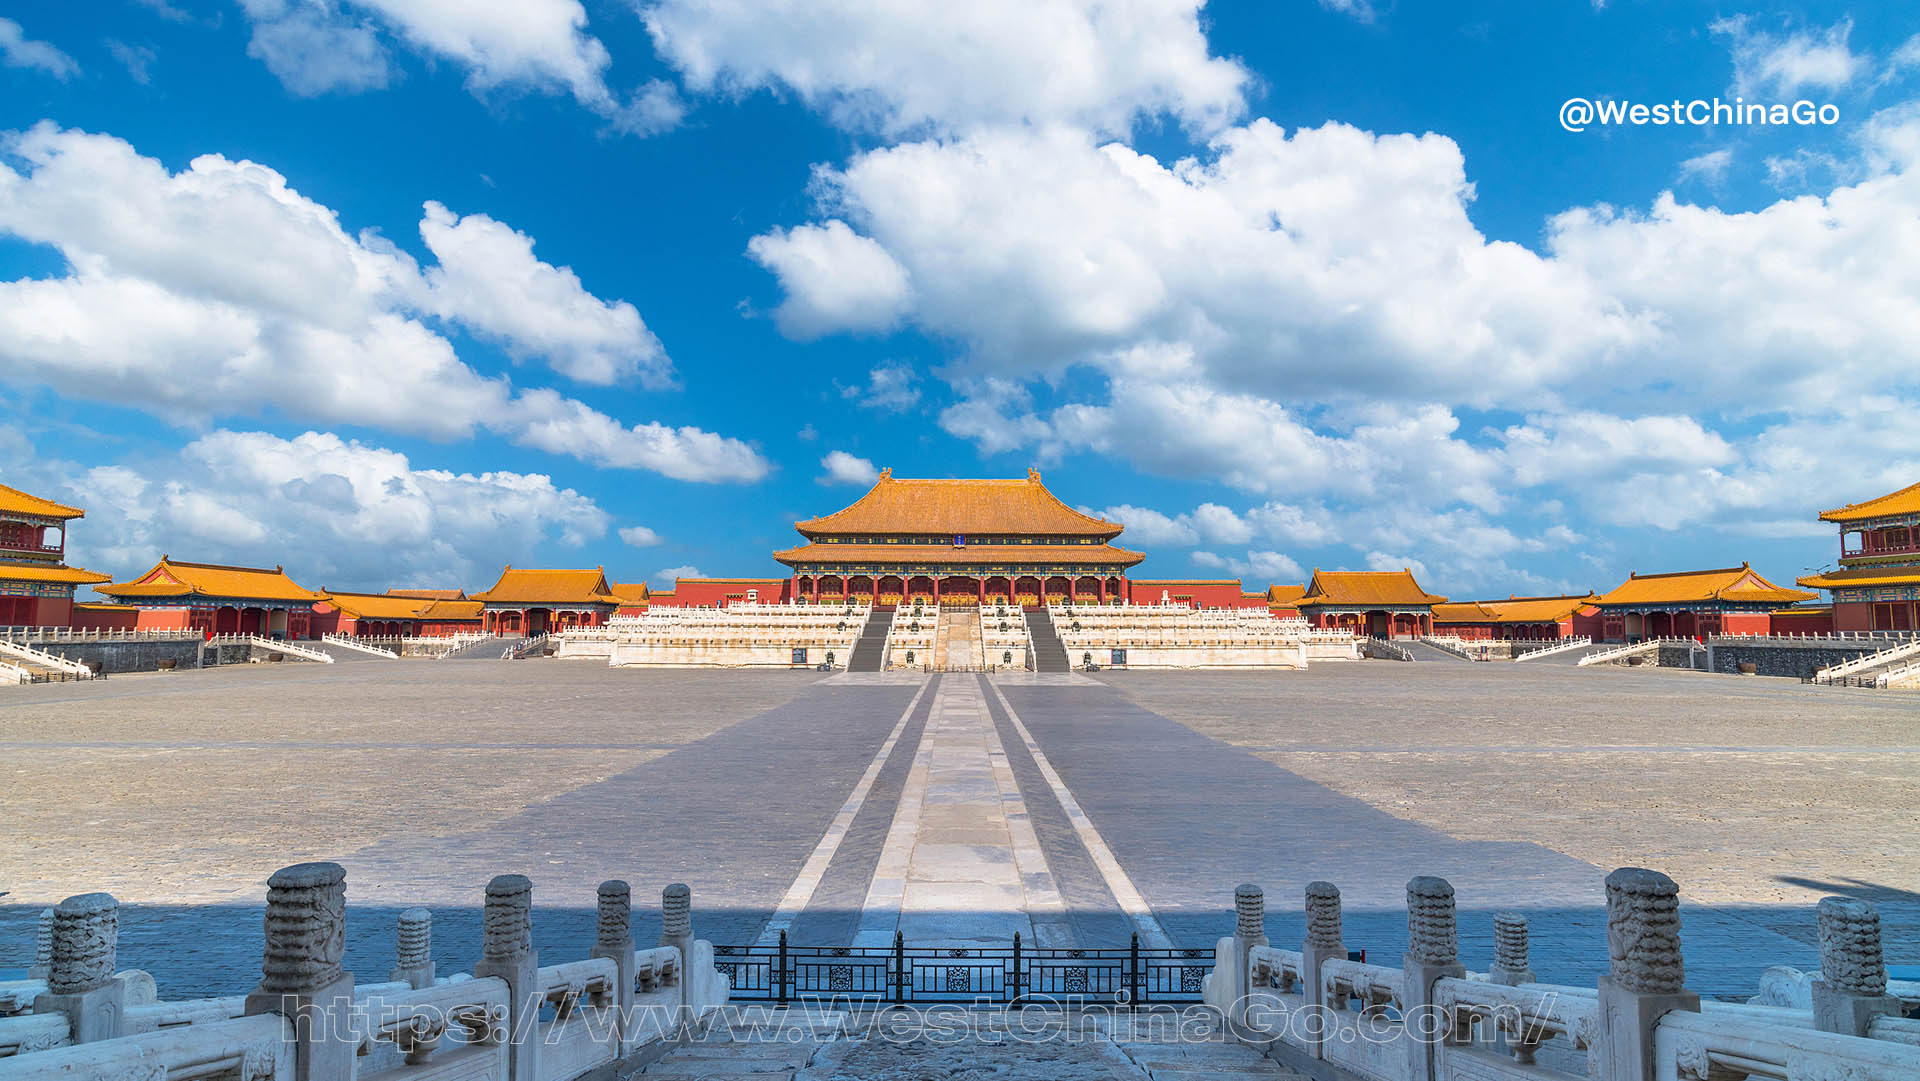 The Forbidden City,Beijing